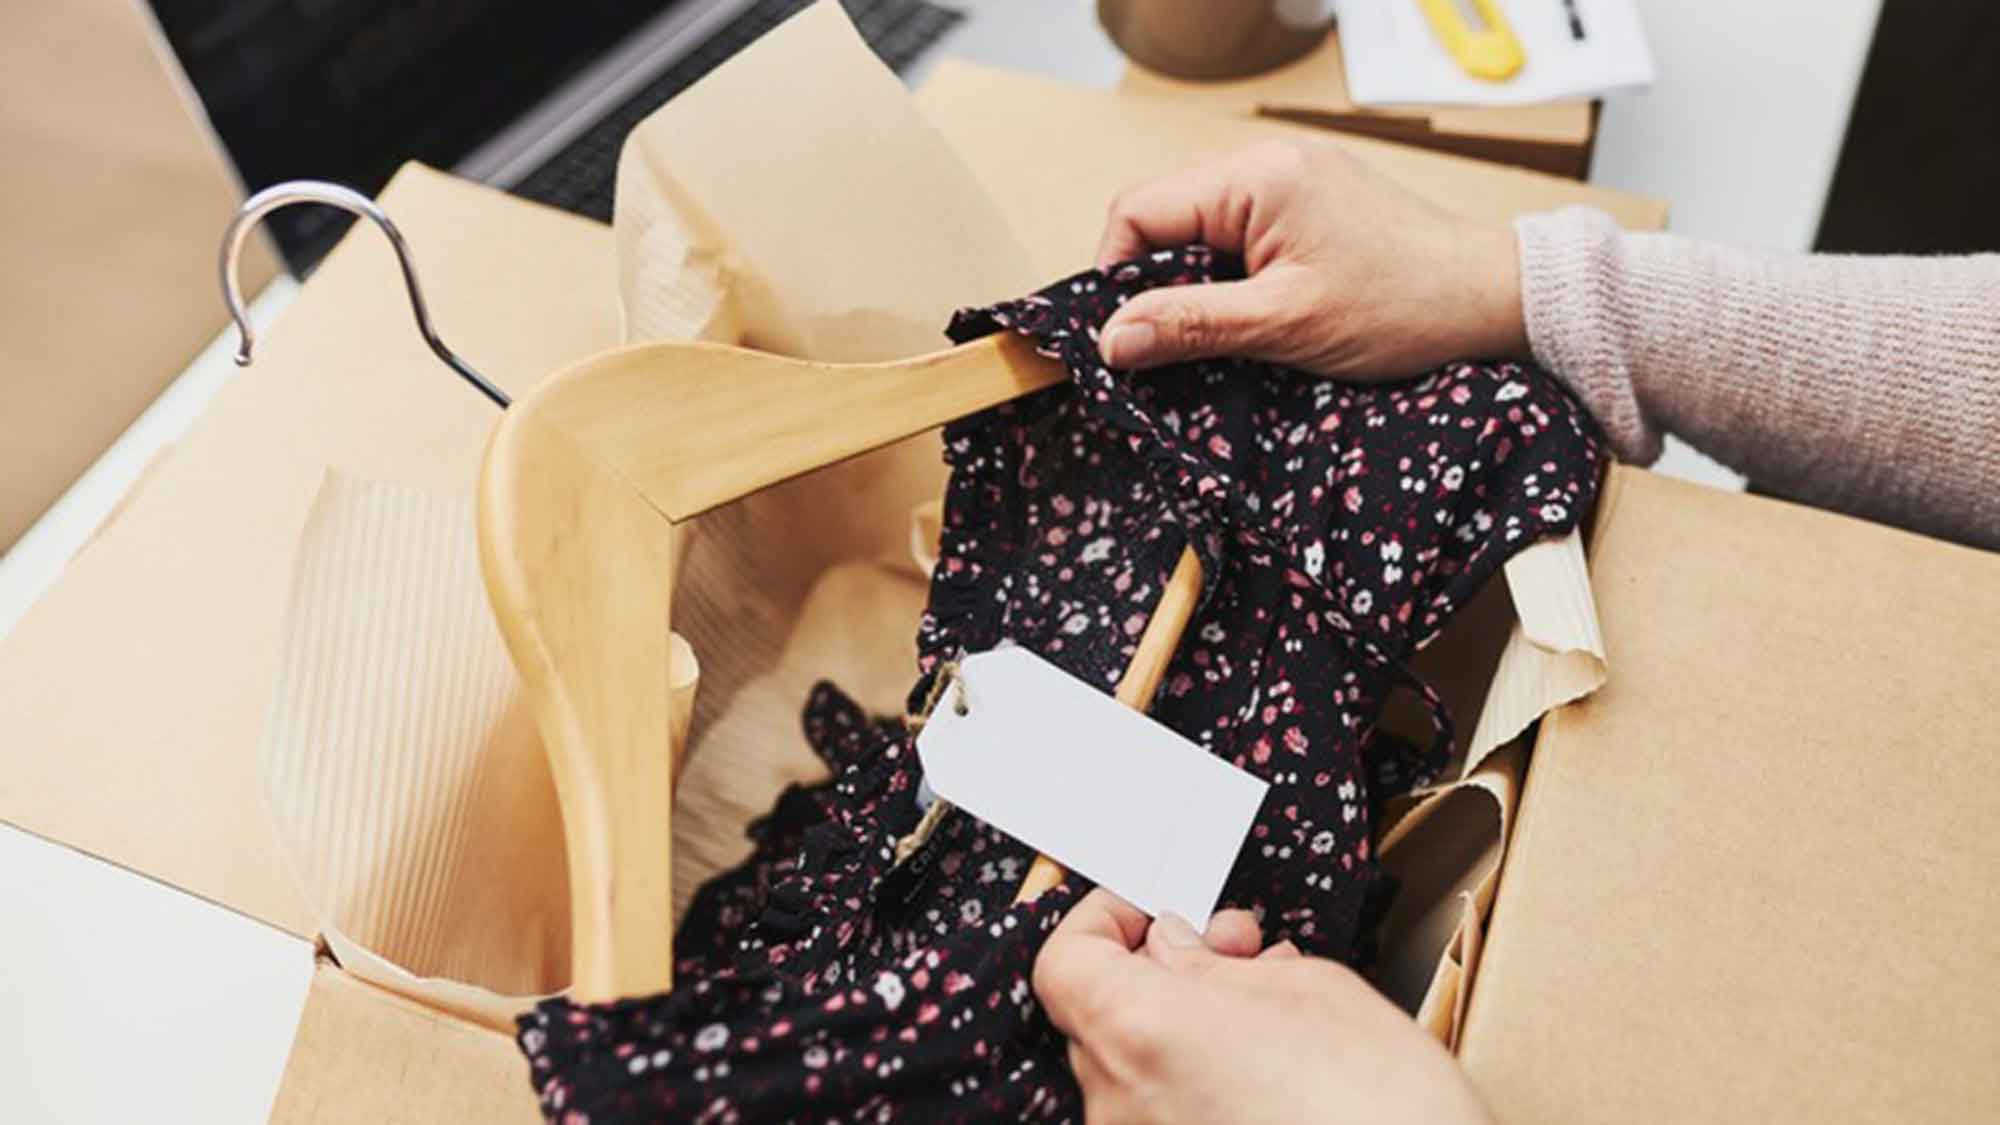 Verbraucherzentrale Nordrhein Westfalen: Verlässliche Textilsiegel sind in den großen Onlineshops Mangelware